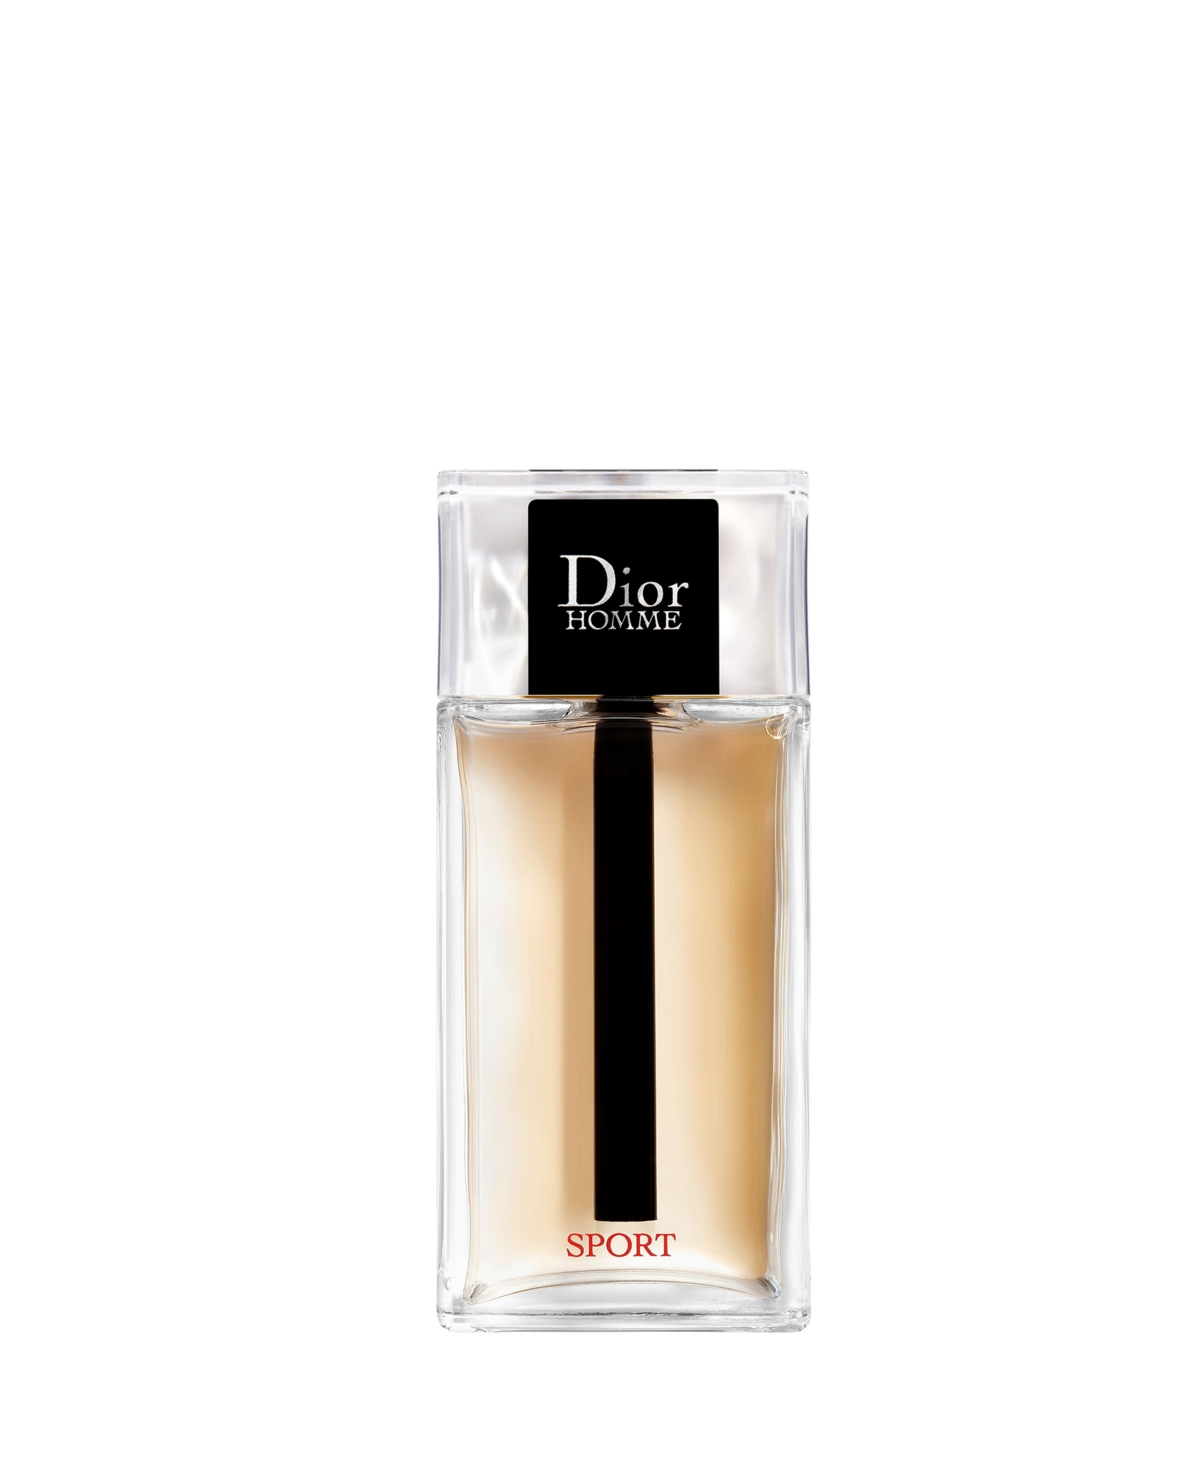 Dior Homme Sport Eau De Toilette Spray, 6.8 Oz.